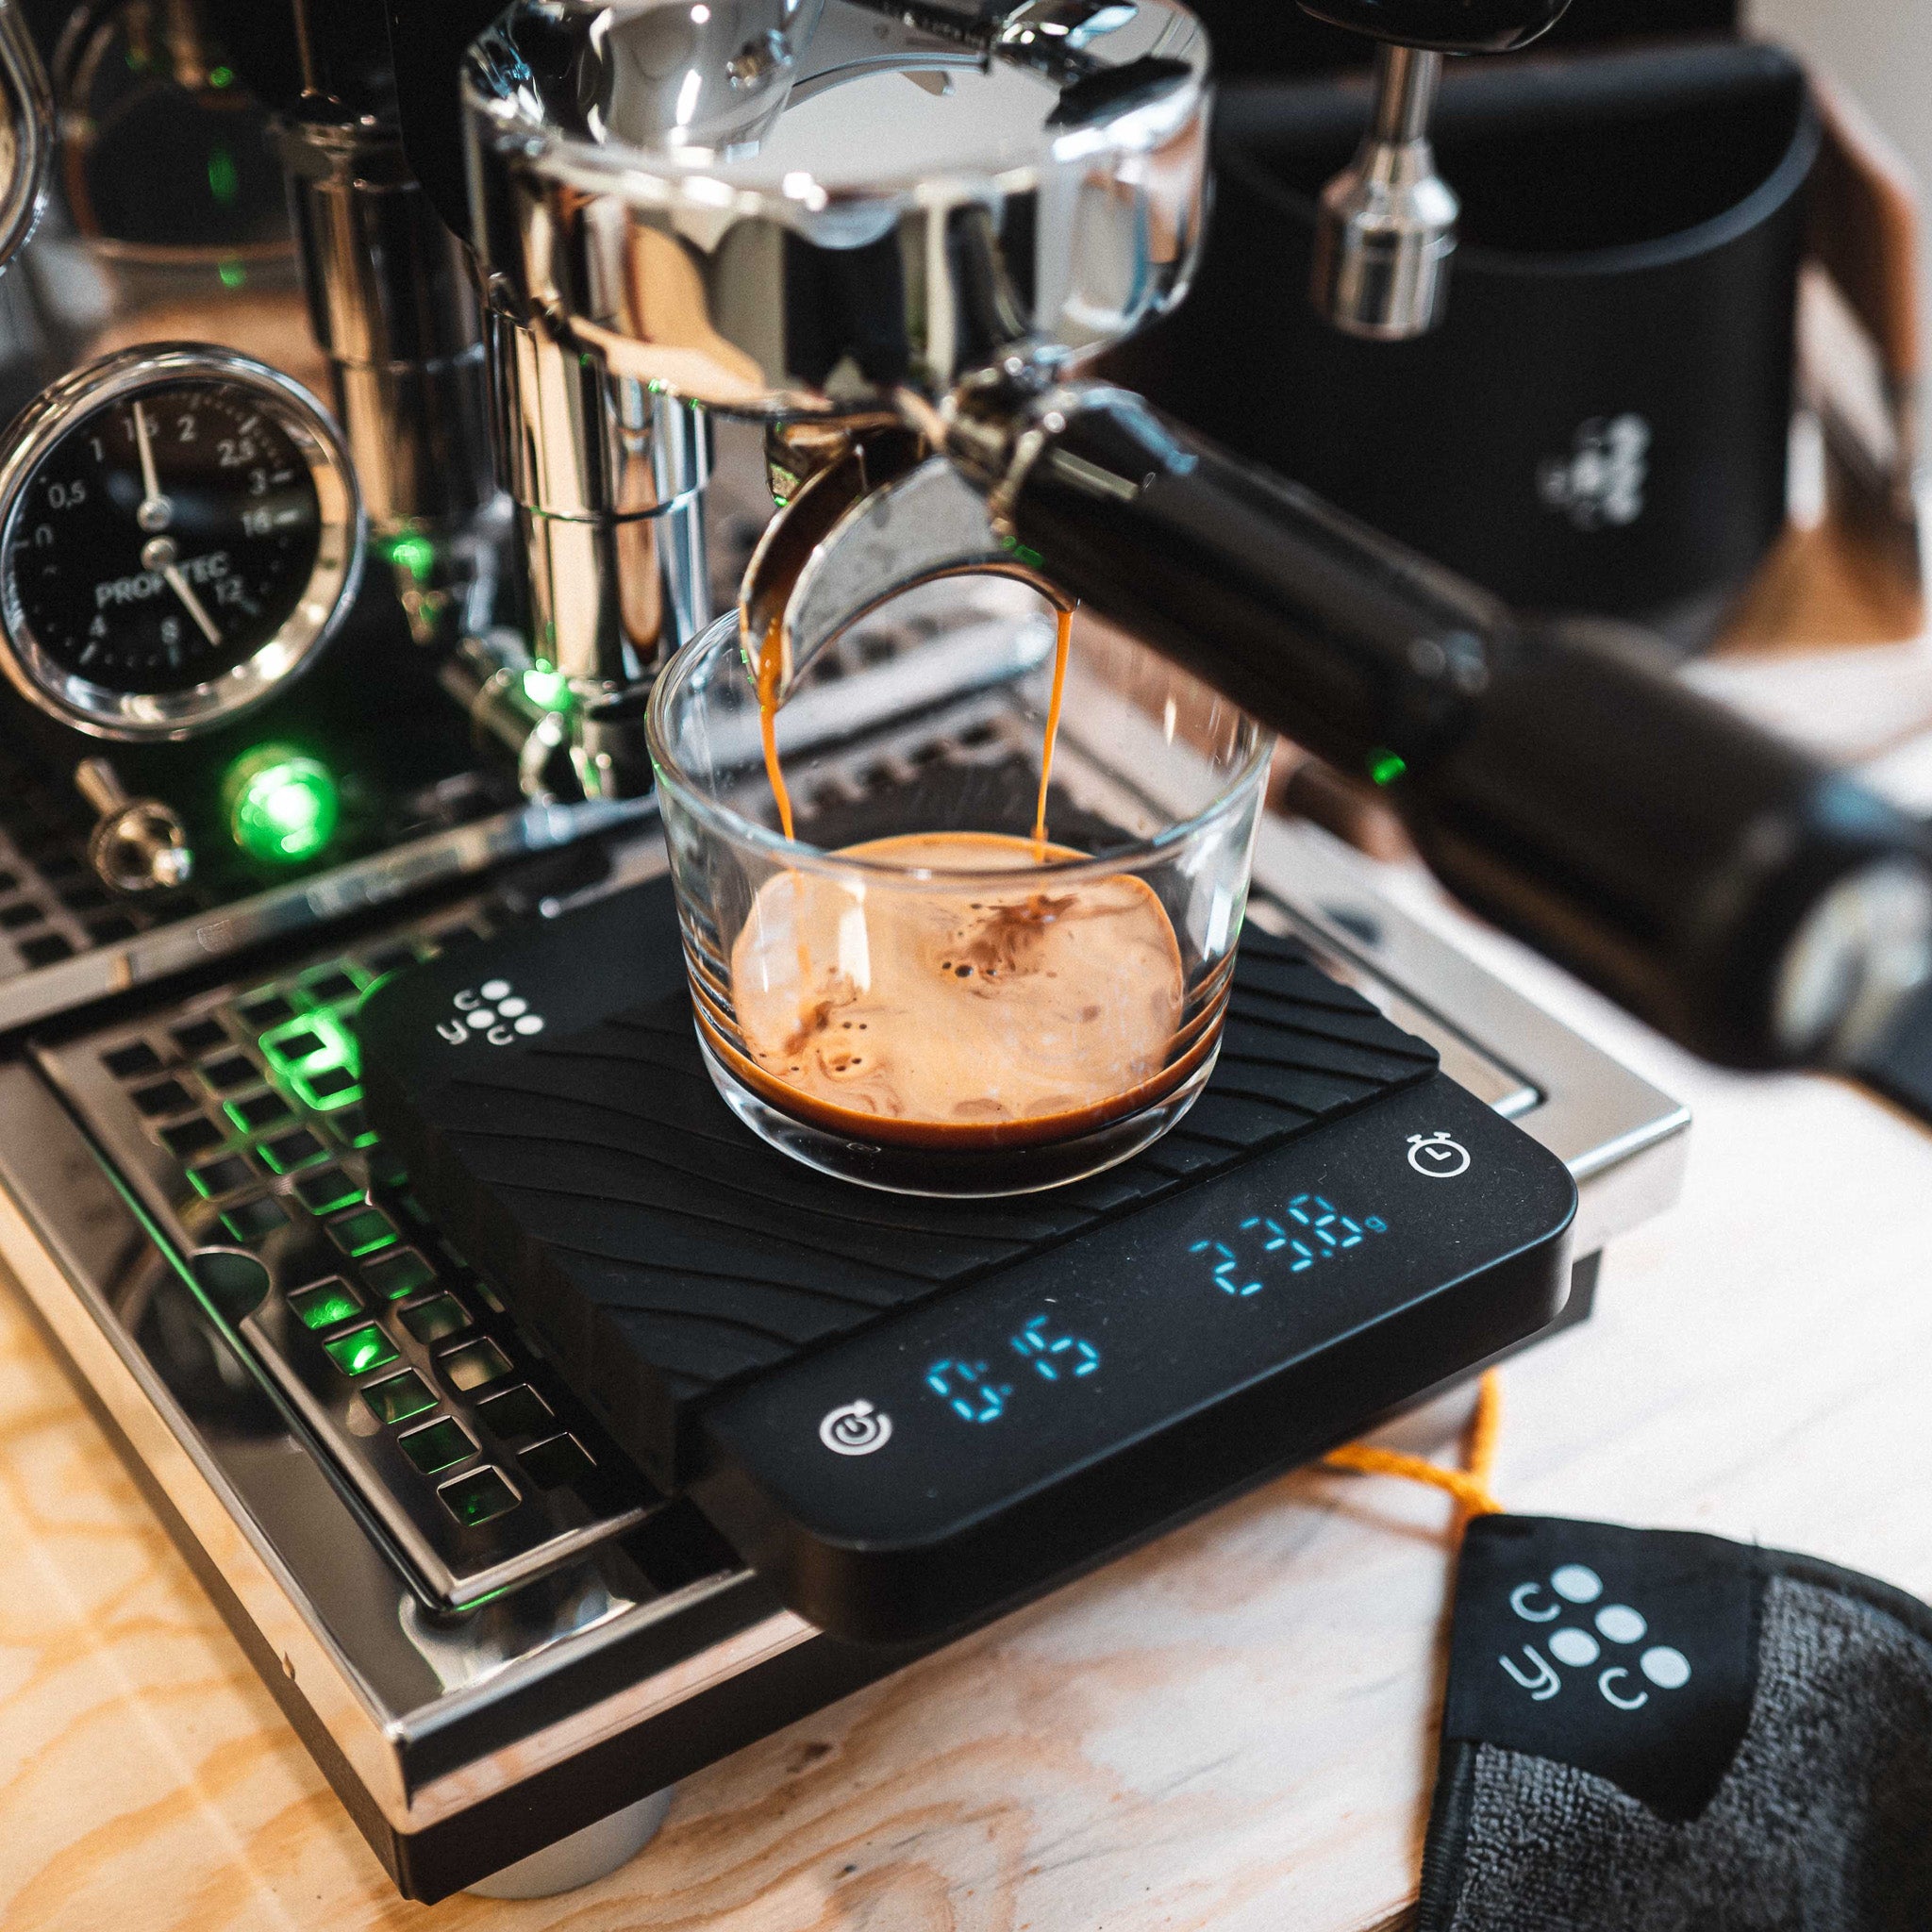 Espresso extrahiert in das Kaffeeglas auf der Kaffeewaage. 